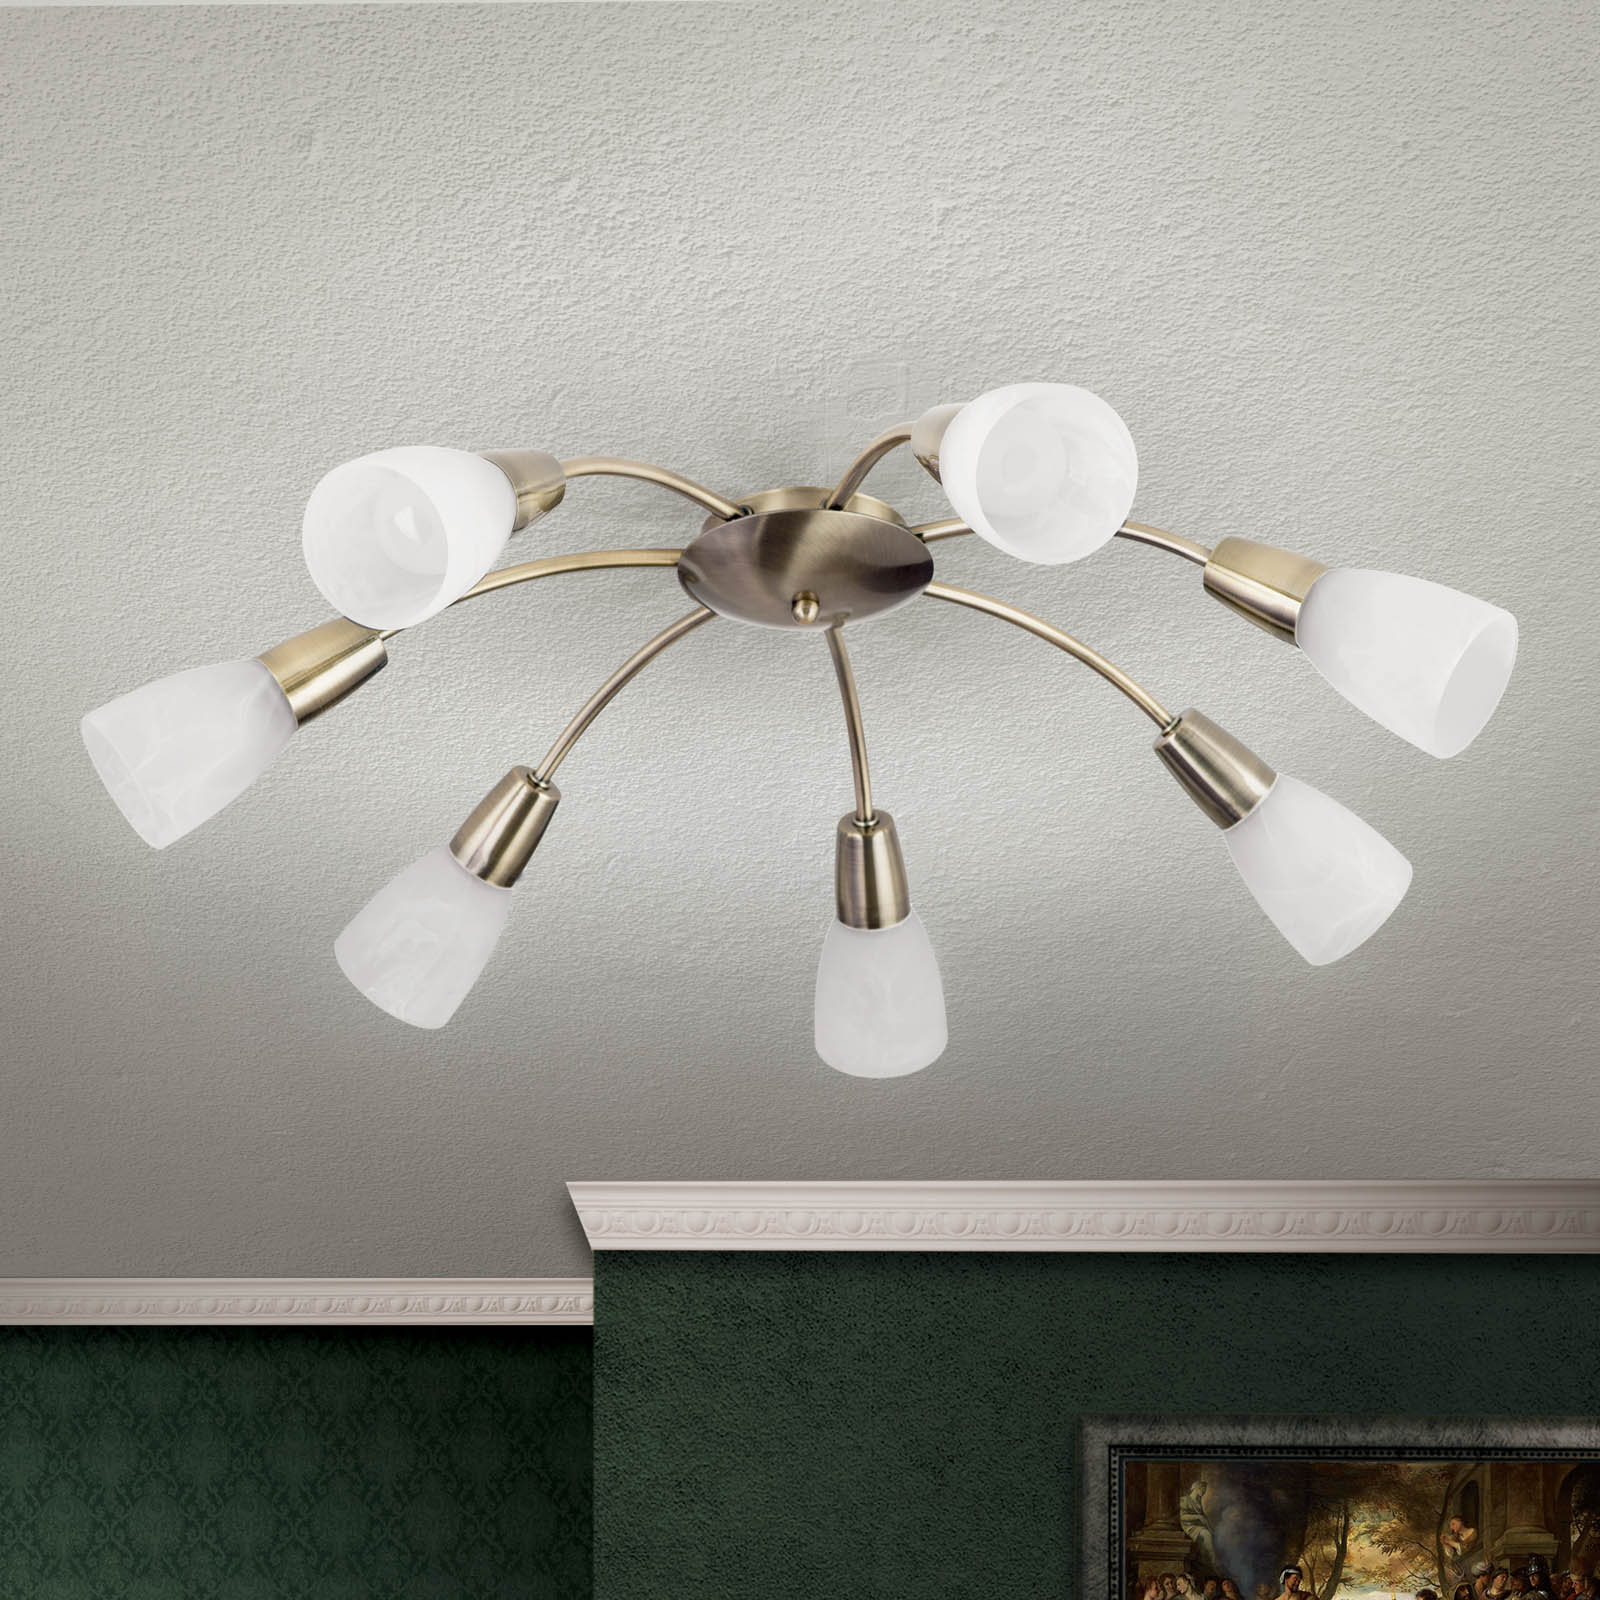 Tullo ceiling light, seven-bulb, antique brass